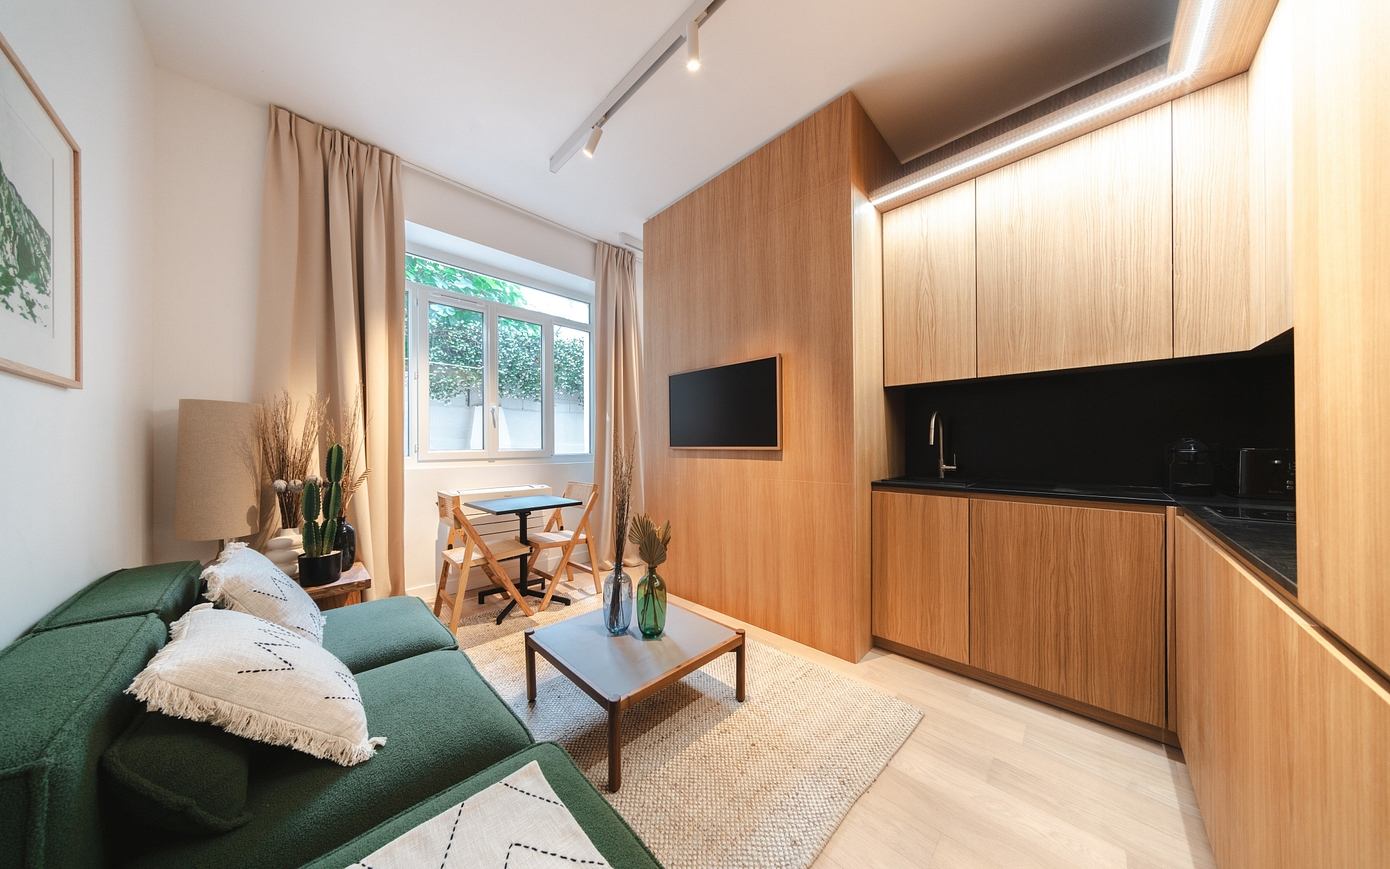 Boutique Studio in Paris: Zen-Inspired Apartment Design